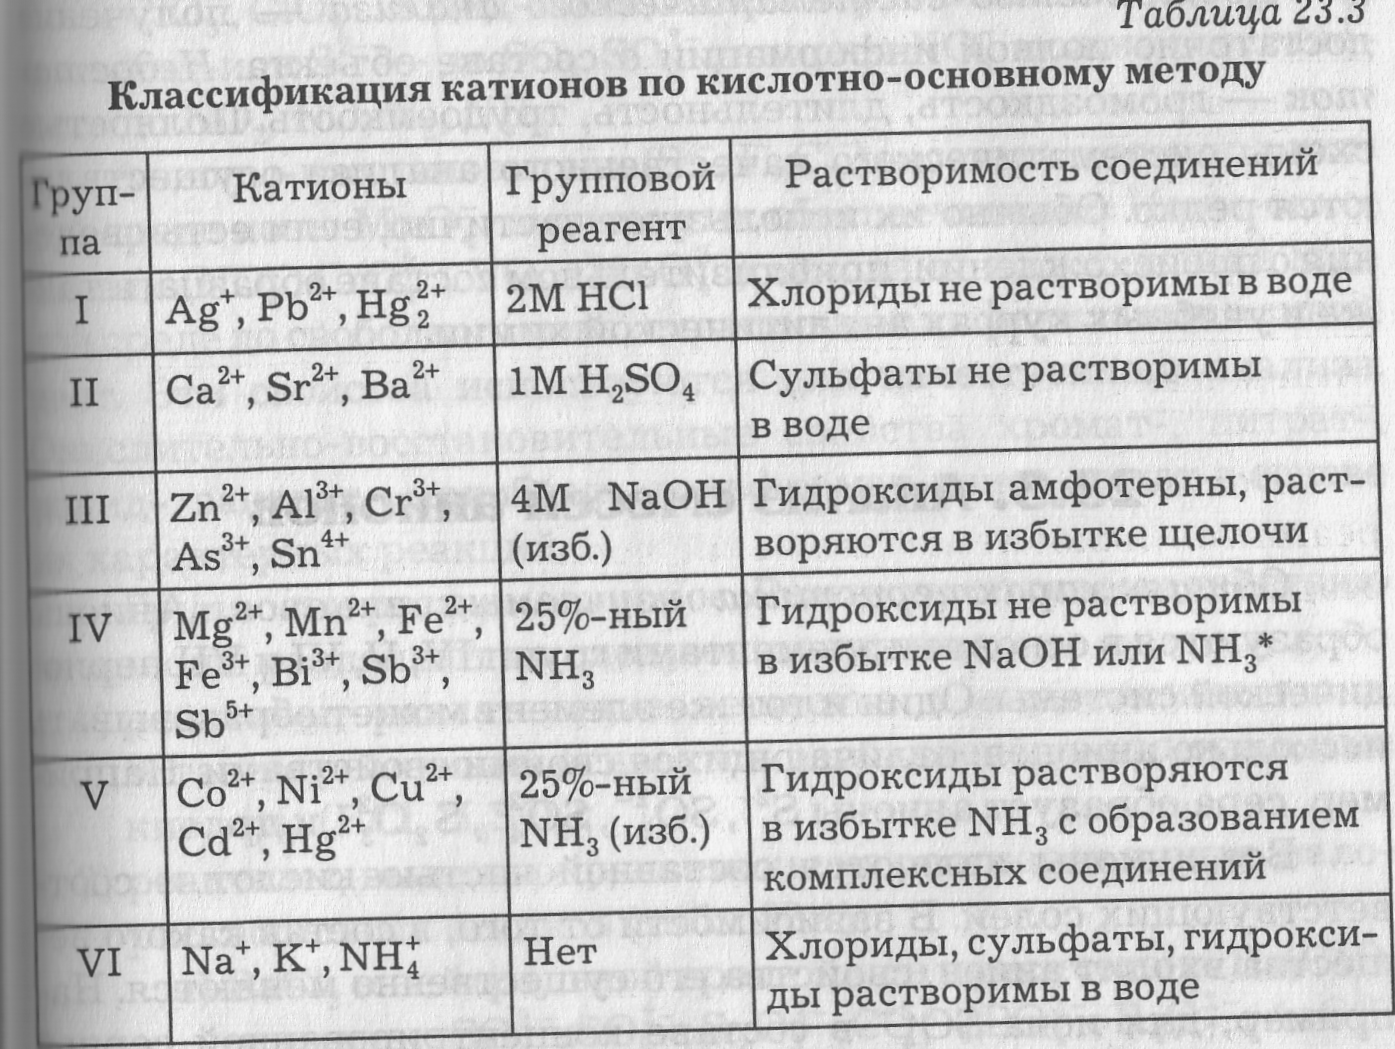 Первая группа анионов. Аналитическая химия таблица. Таблица – кислотно-основная классификация катионов. Аналитические группы катионов. Качественные реакции на катионы первой аналитической группы.